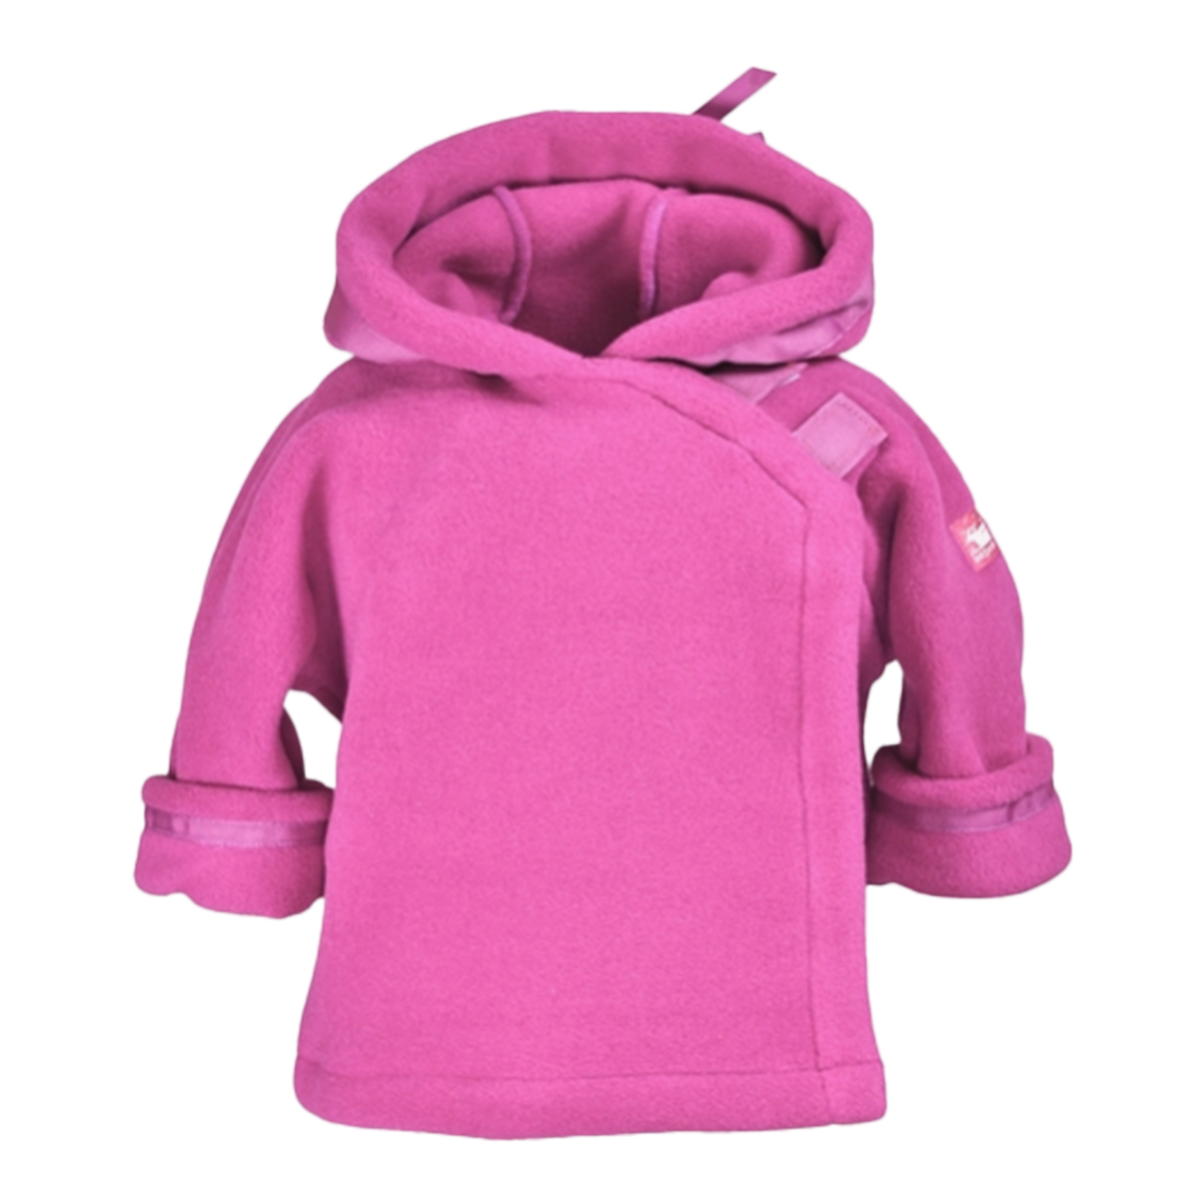 Baby Girl Hot Pink Fleece Toddler Jacket by Widgeon